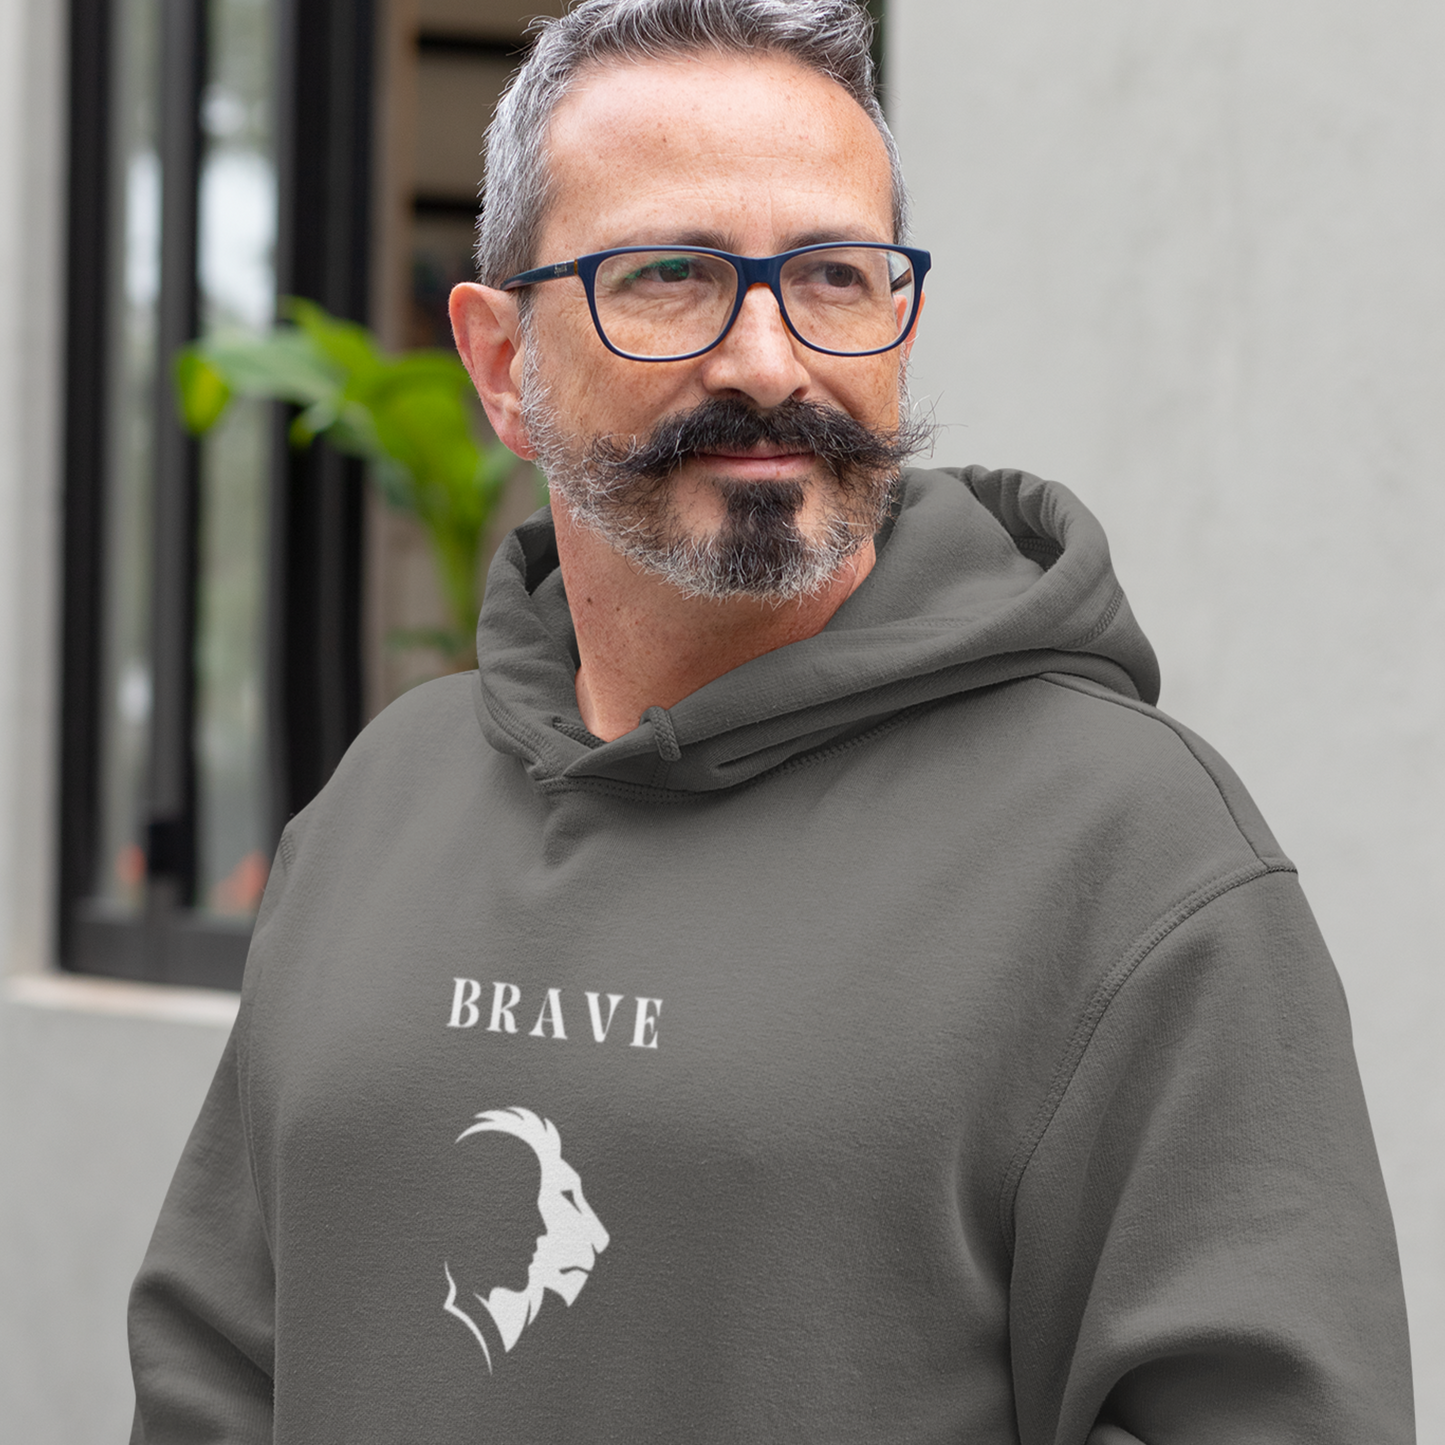 Brave  Hooded Sweatshirt gift, inspirational word hoodie gift, sweatshirt gift with encouraging words